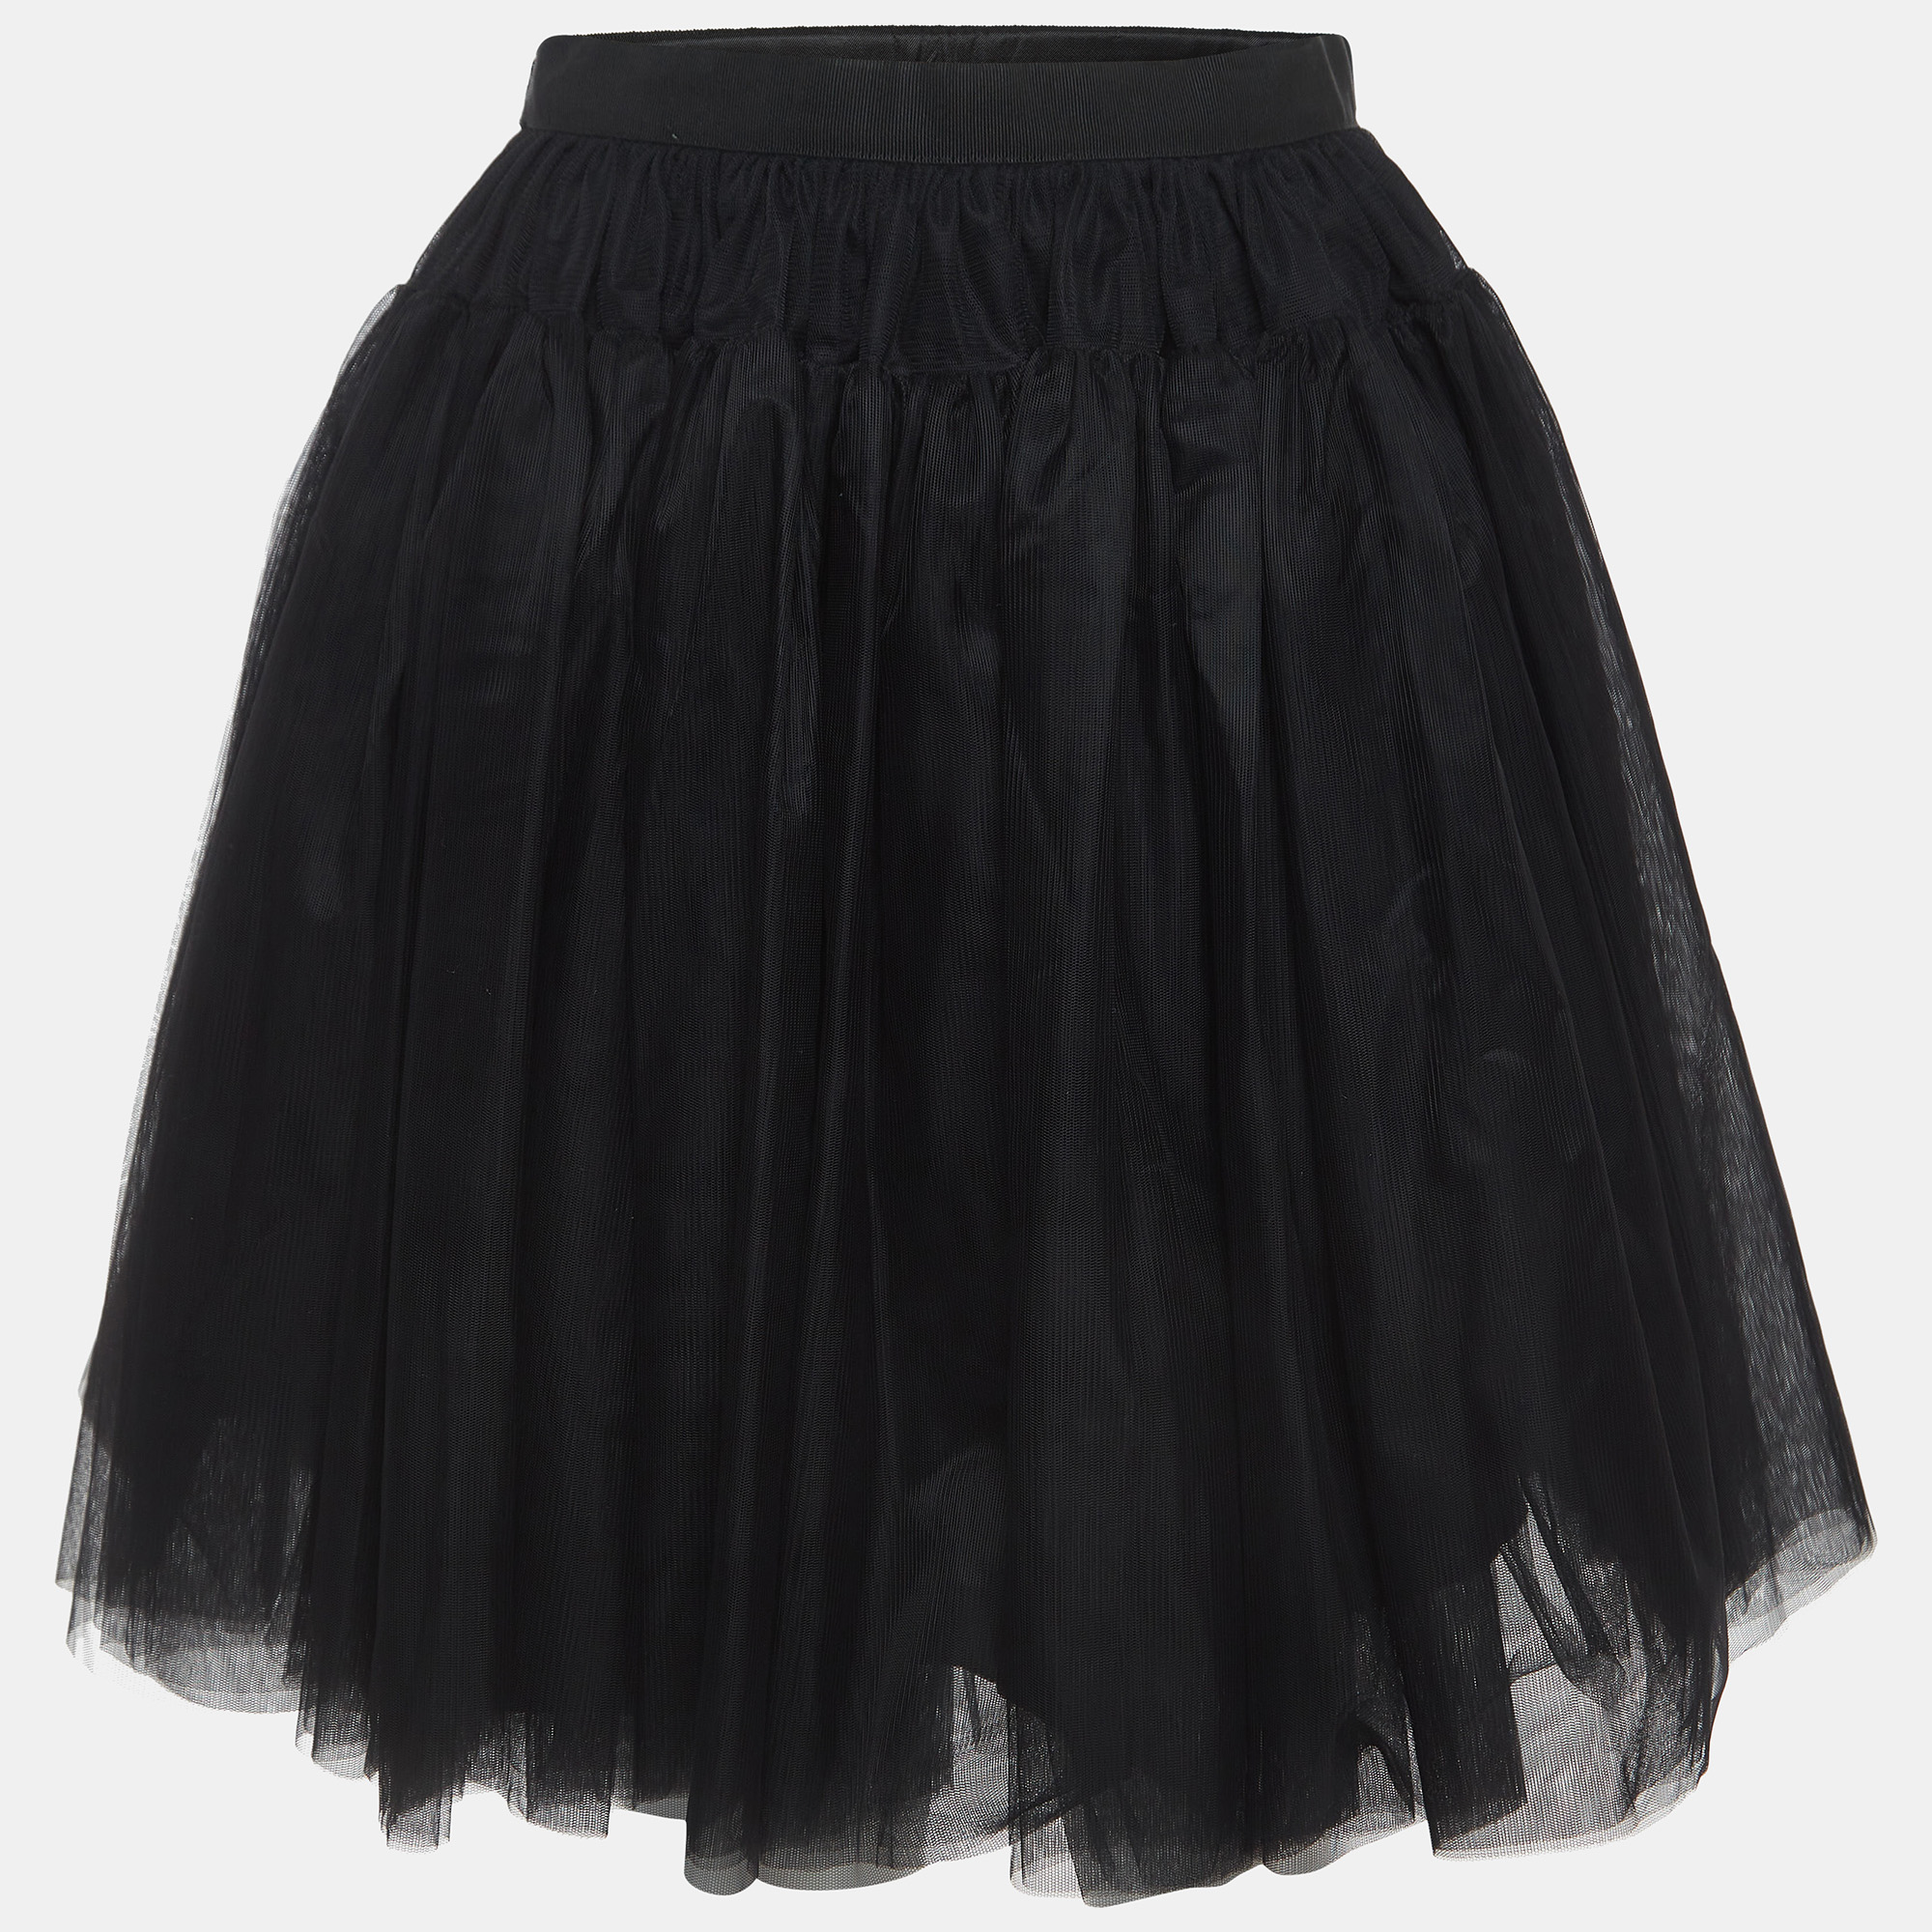 Dolce & Gabbana Black Tulle Skirt (11-12 Yrs)